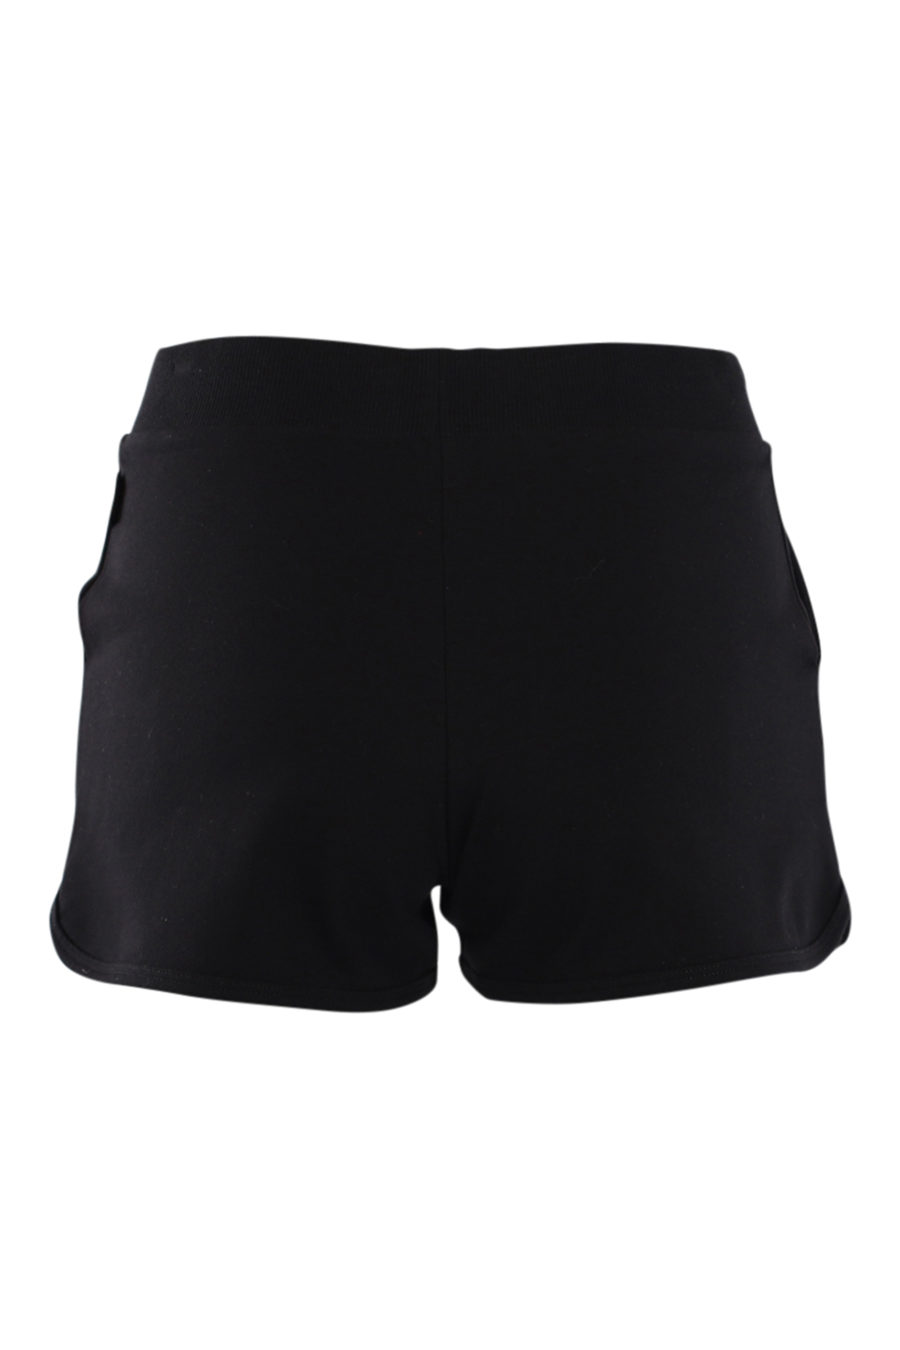 Pantalón corto negro con logo oso "underbear" - IMG 0555